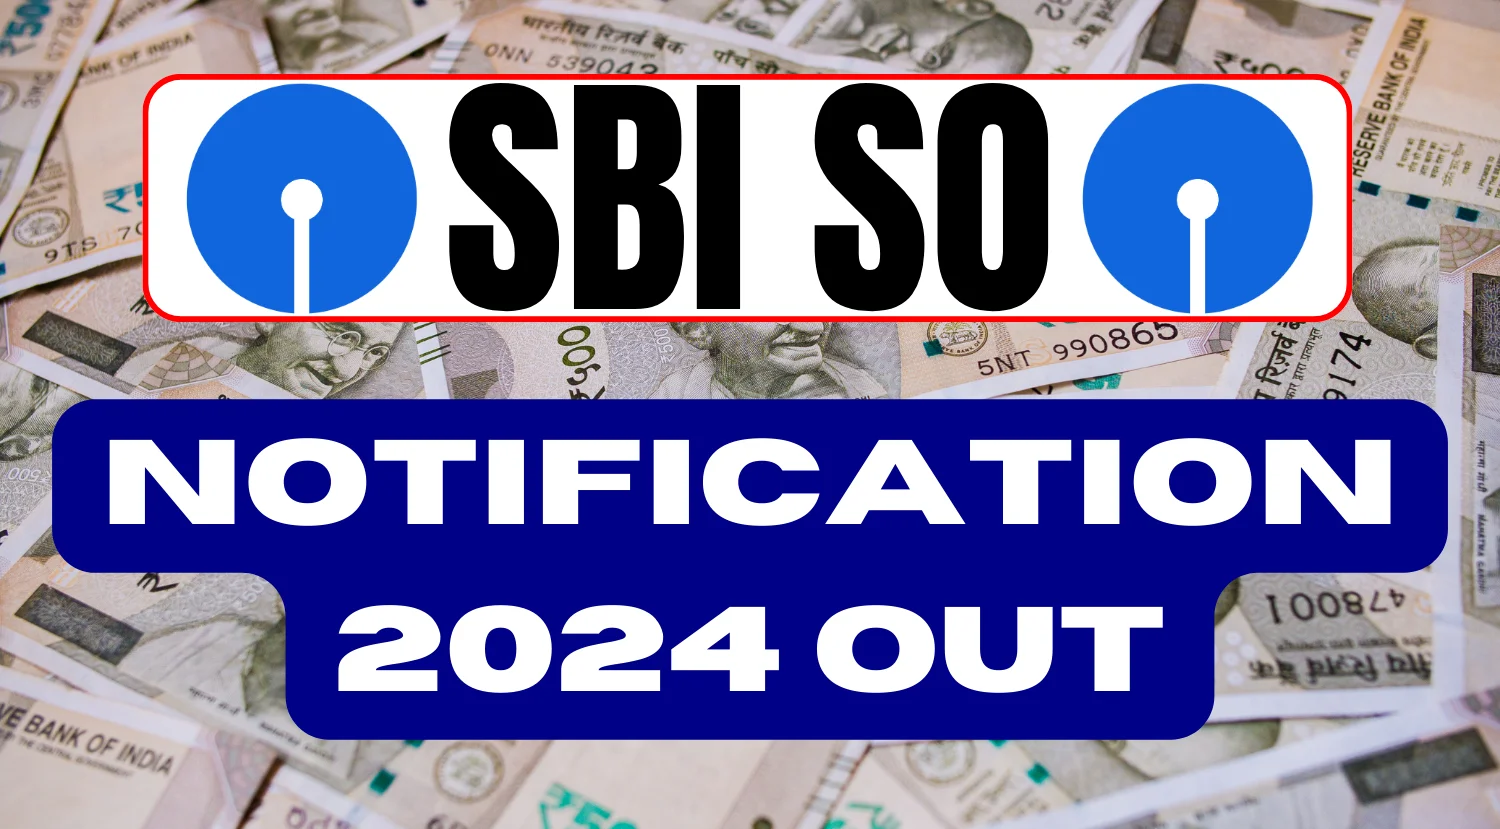 SBI SO Trade Finance Officer Recruitment 2024